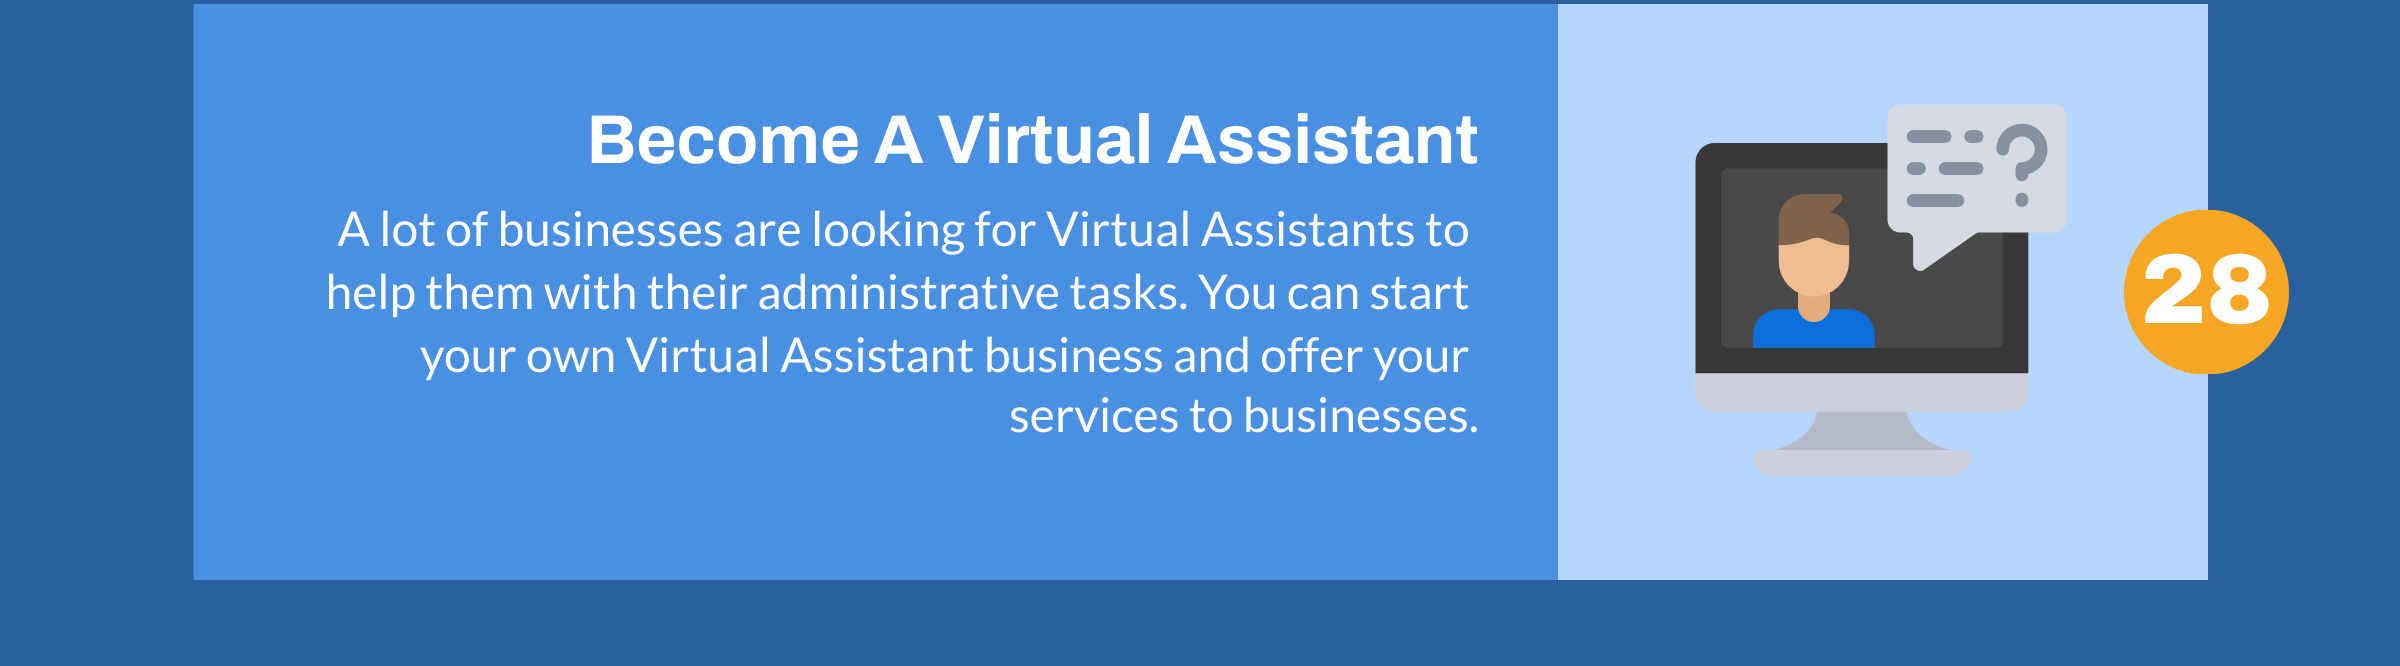 Werden Sie ein virtueller Assistent